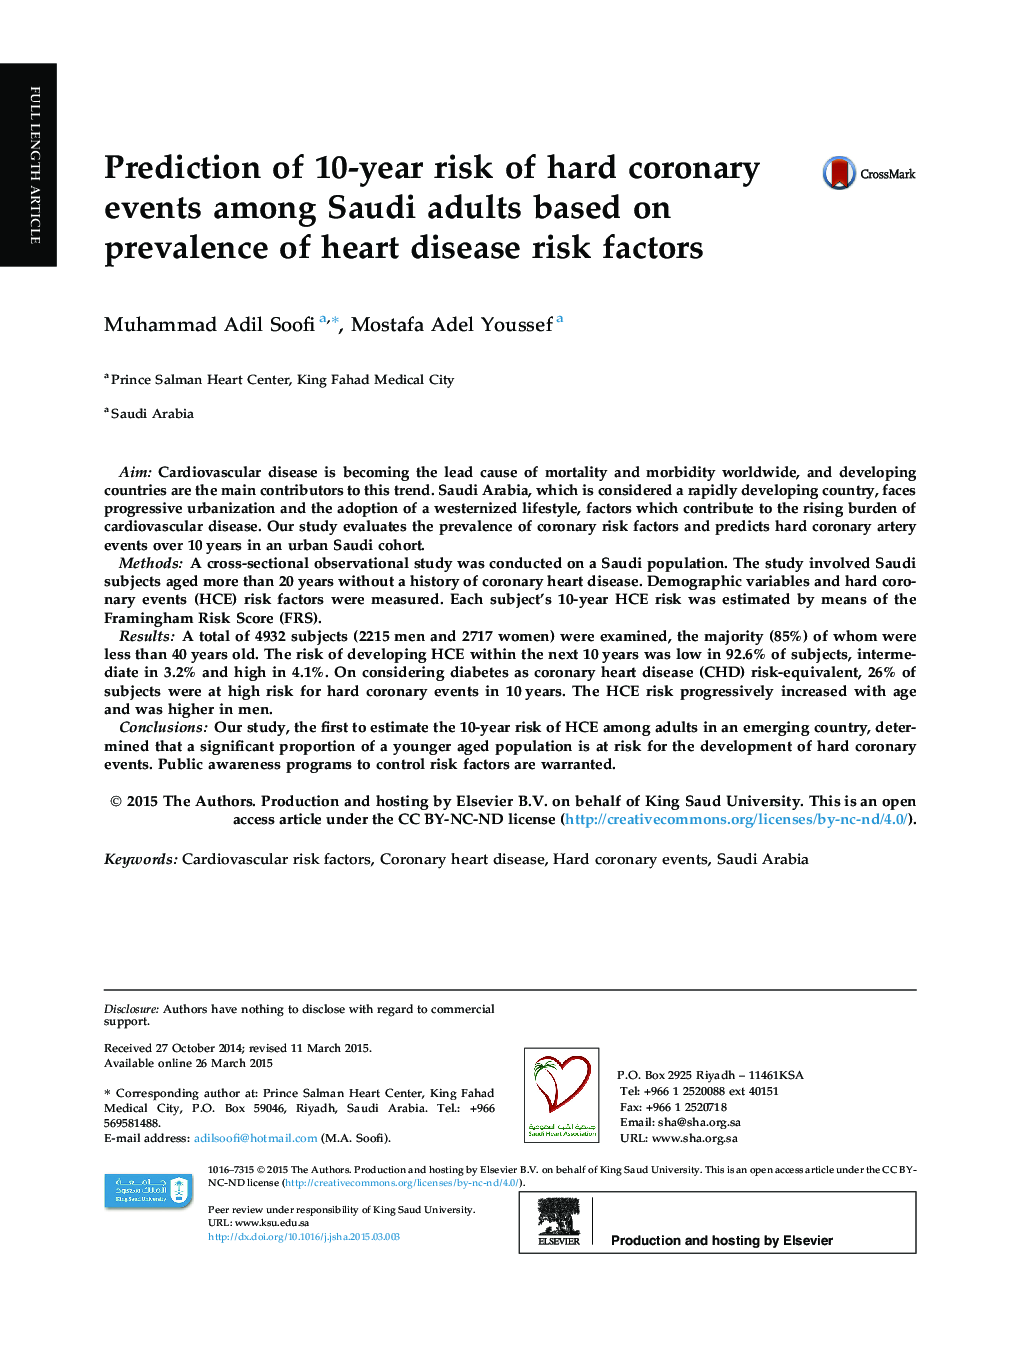 پیش بینی خطر 10 ساله وقایع سخت کرونر در عربستان سعودی بر اساس شیوع عوامل خطر بیماری قلبی 